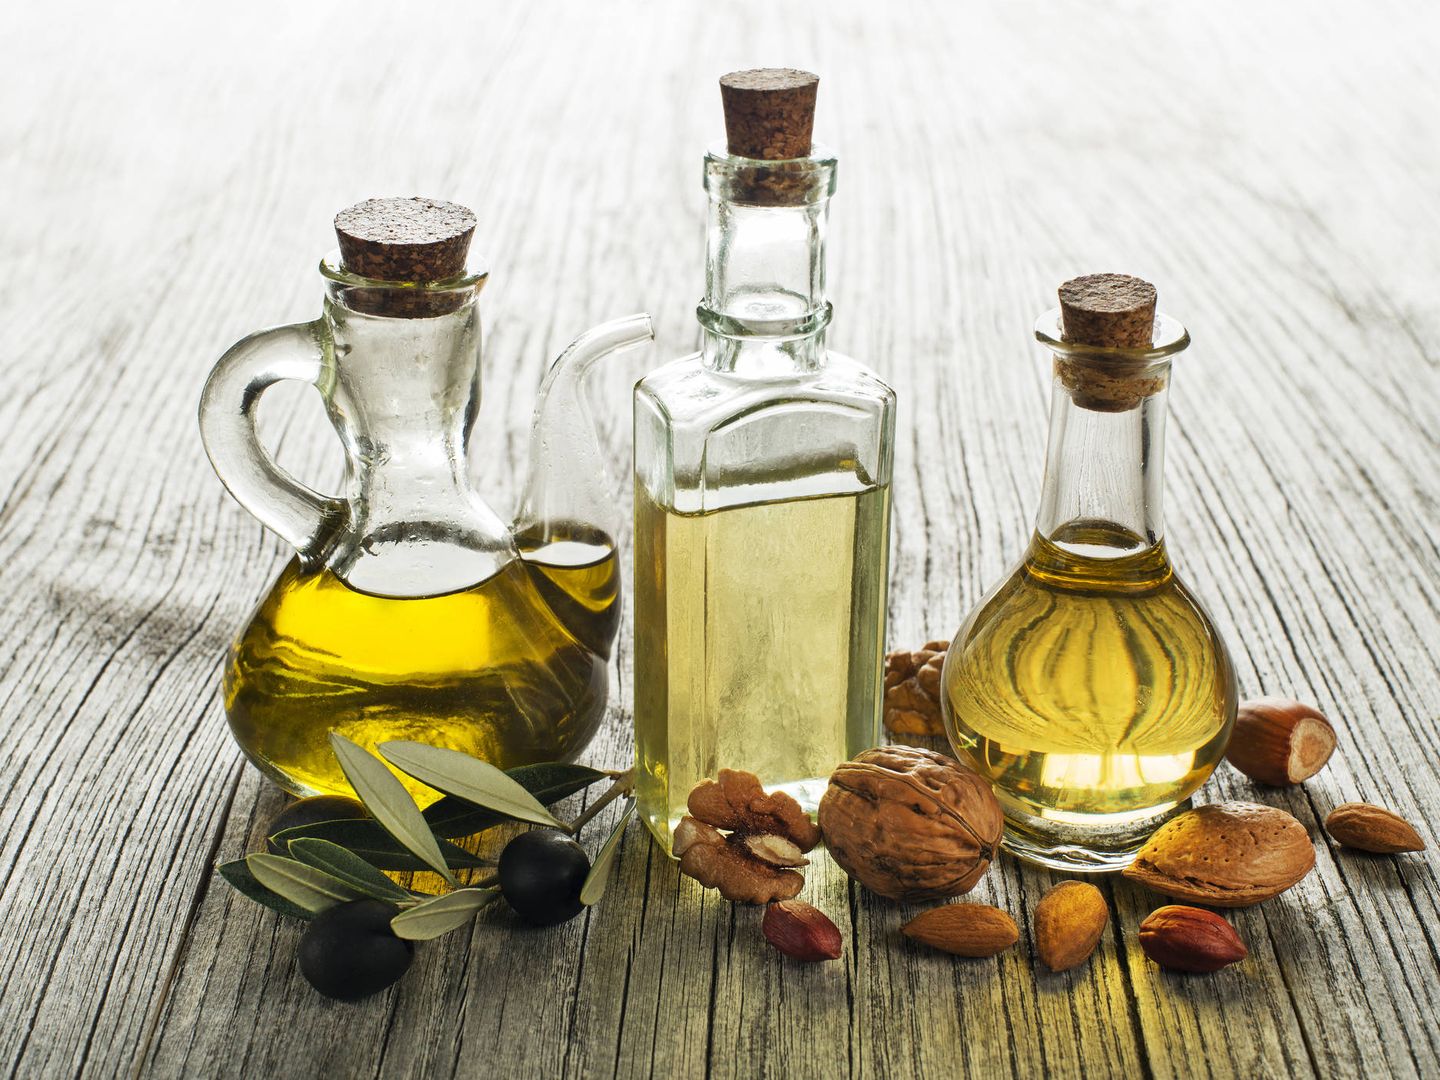 Aceite de lino, ¿de verdad es tan saludable como el de oliva?